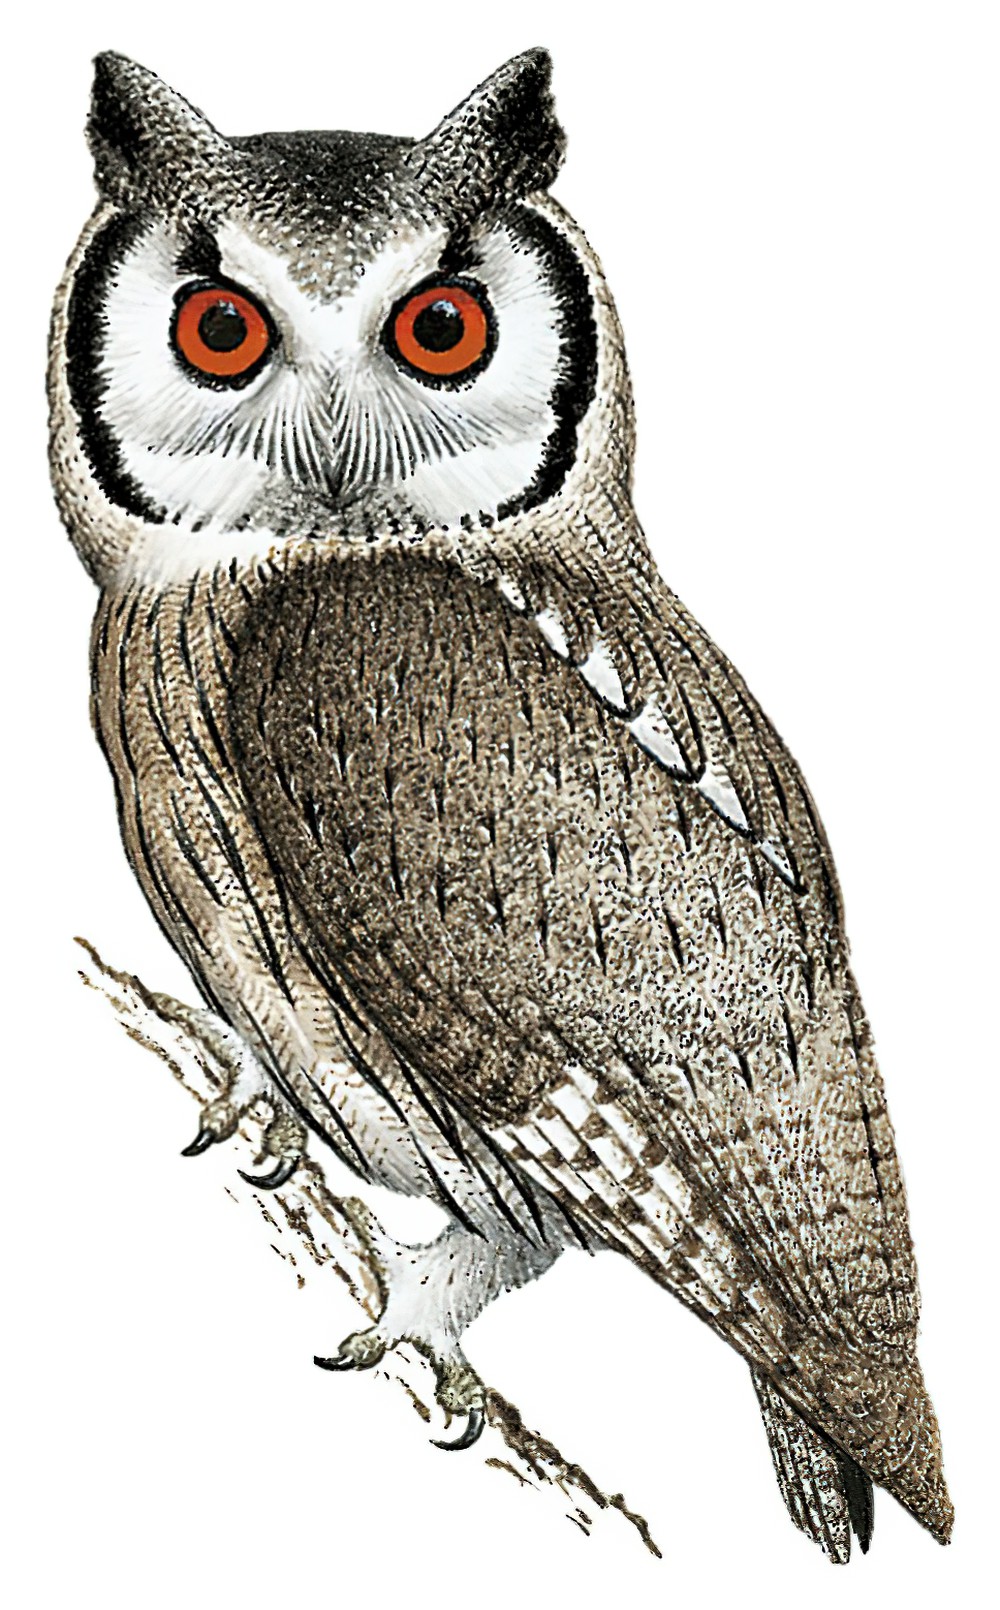 Southern White-faced Owl / Ptilopsis granti